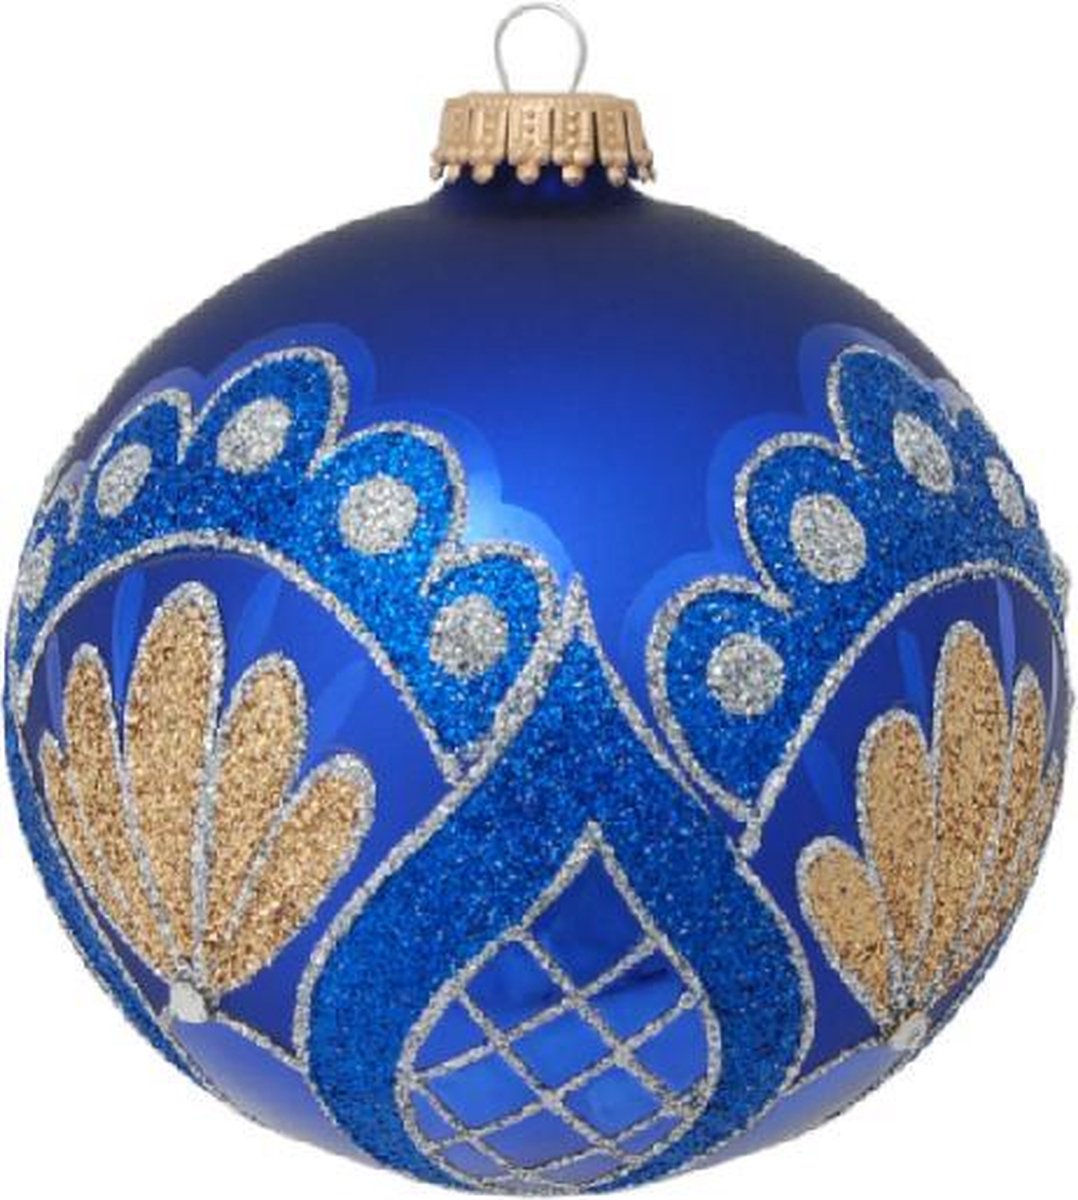 Stijlvolle Blauwe Kerstballen met Gouden en Blauwe Glitters - set van 3 stuks - met de hand gedecoreerd